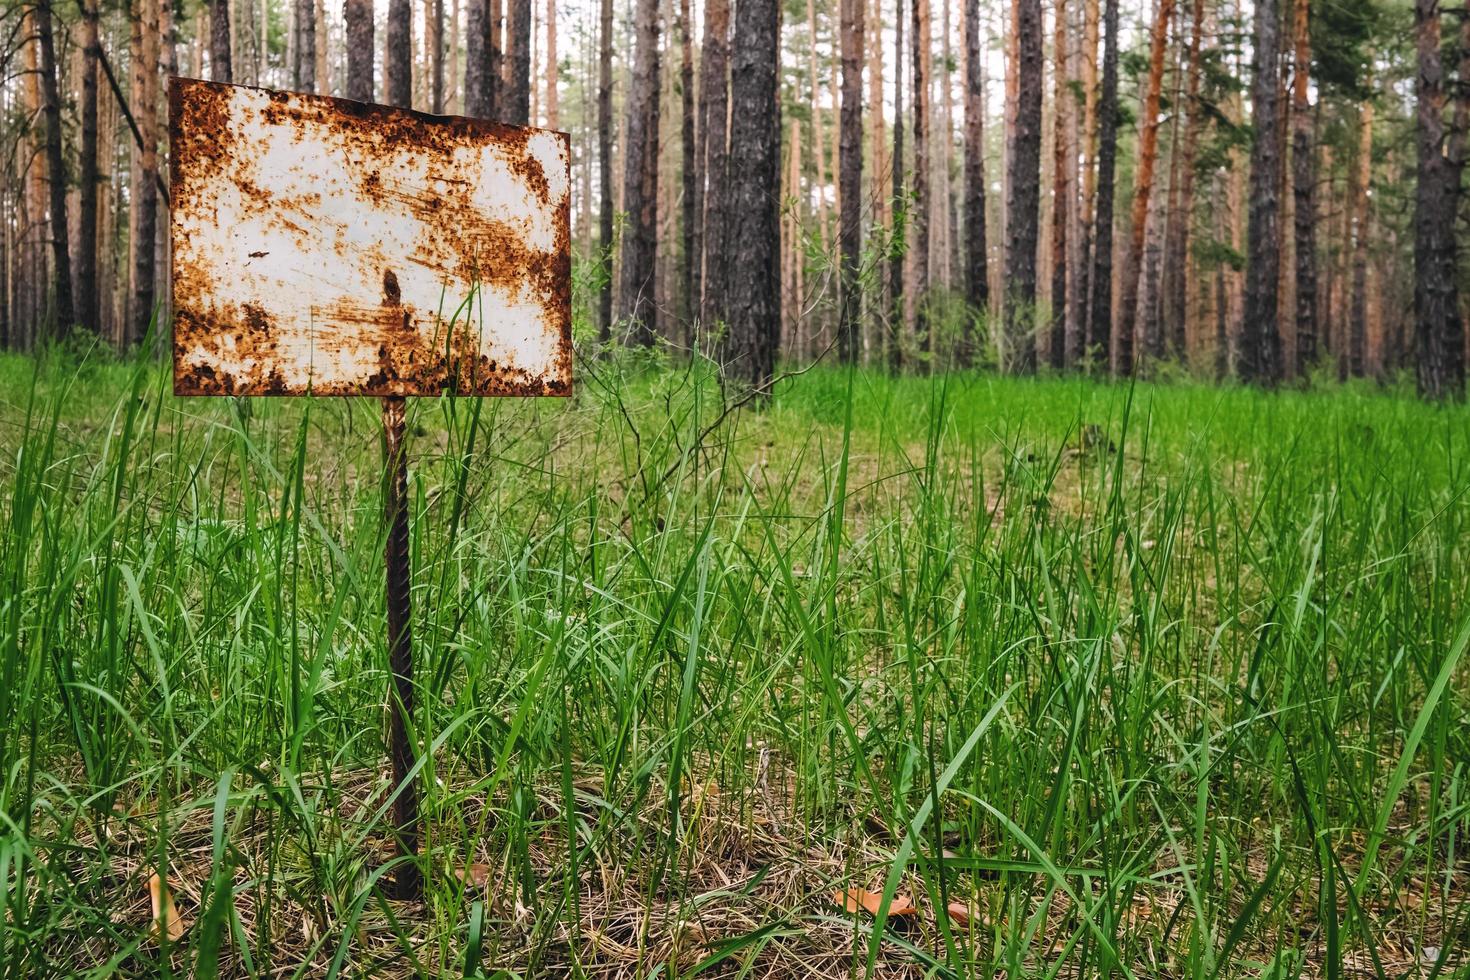 señal de advertencia oxidada en un bosque de pinos de verano. foto